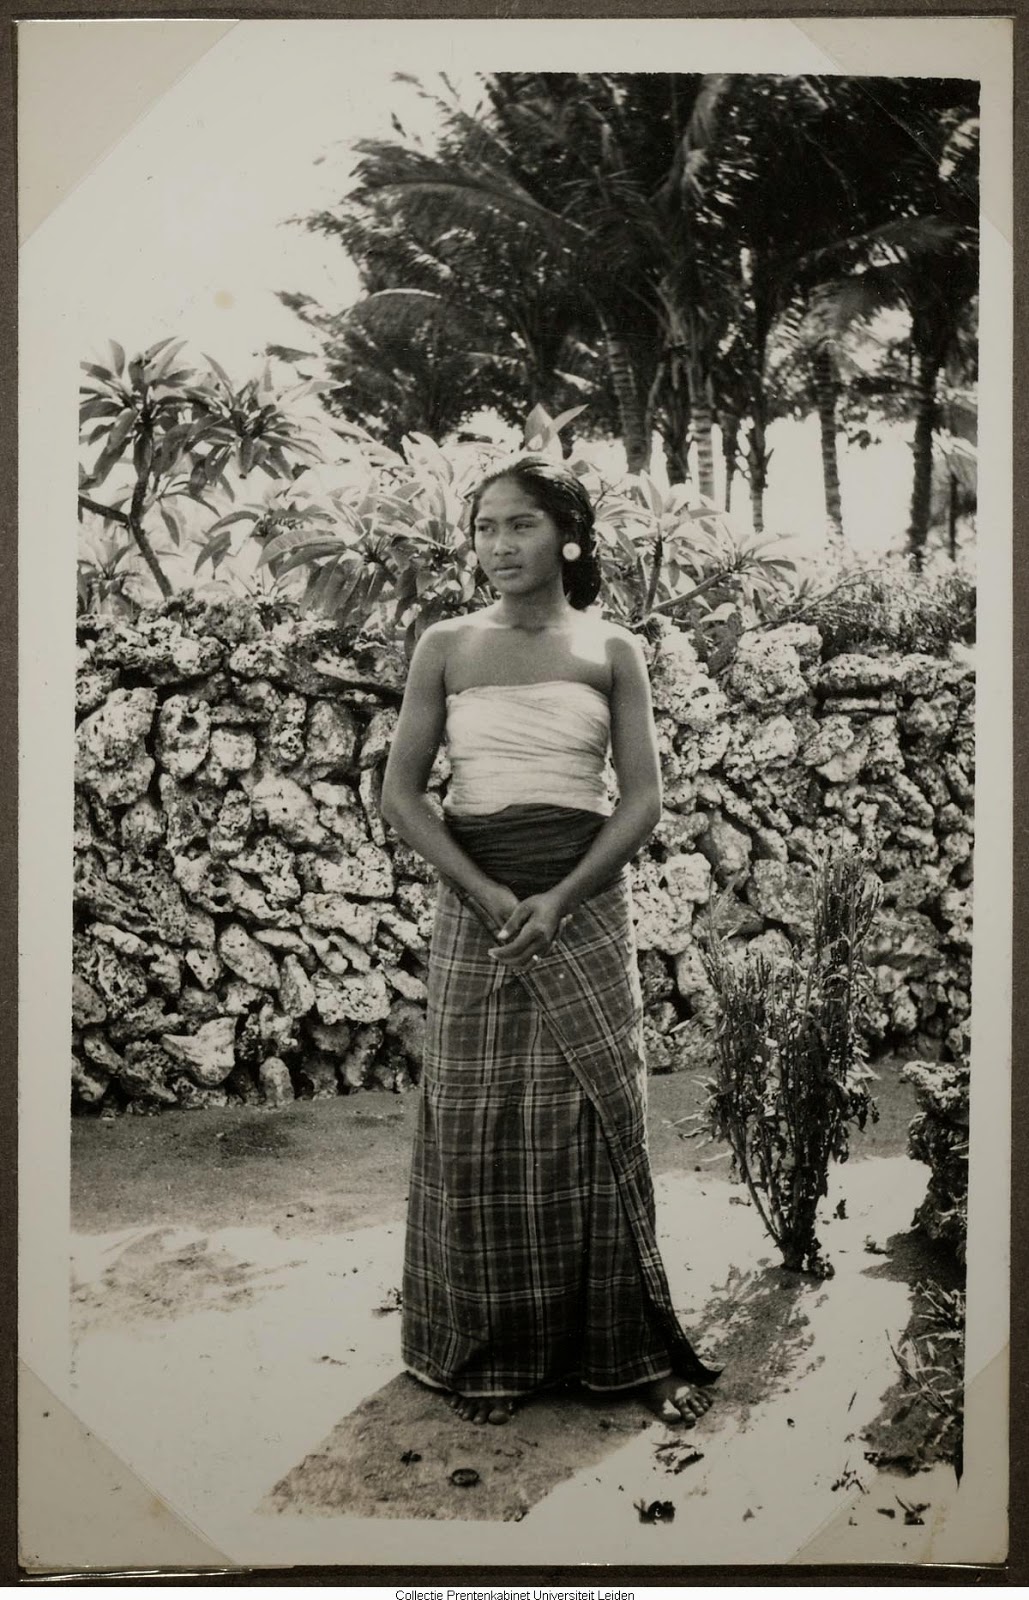 kumpulan-foto-gadis-bali-tempoe-doeloe-telanjang-dada-tahun-1910-1930-balinese-topless-girls-vintage-photography-11